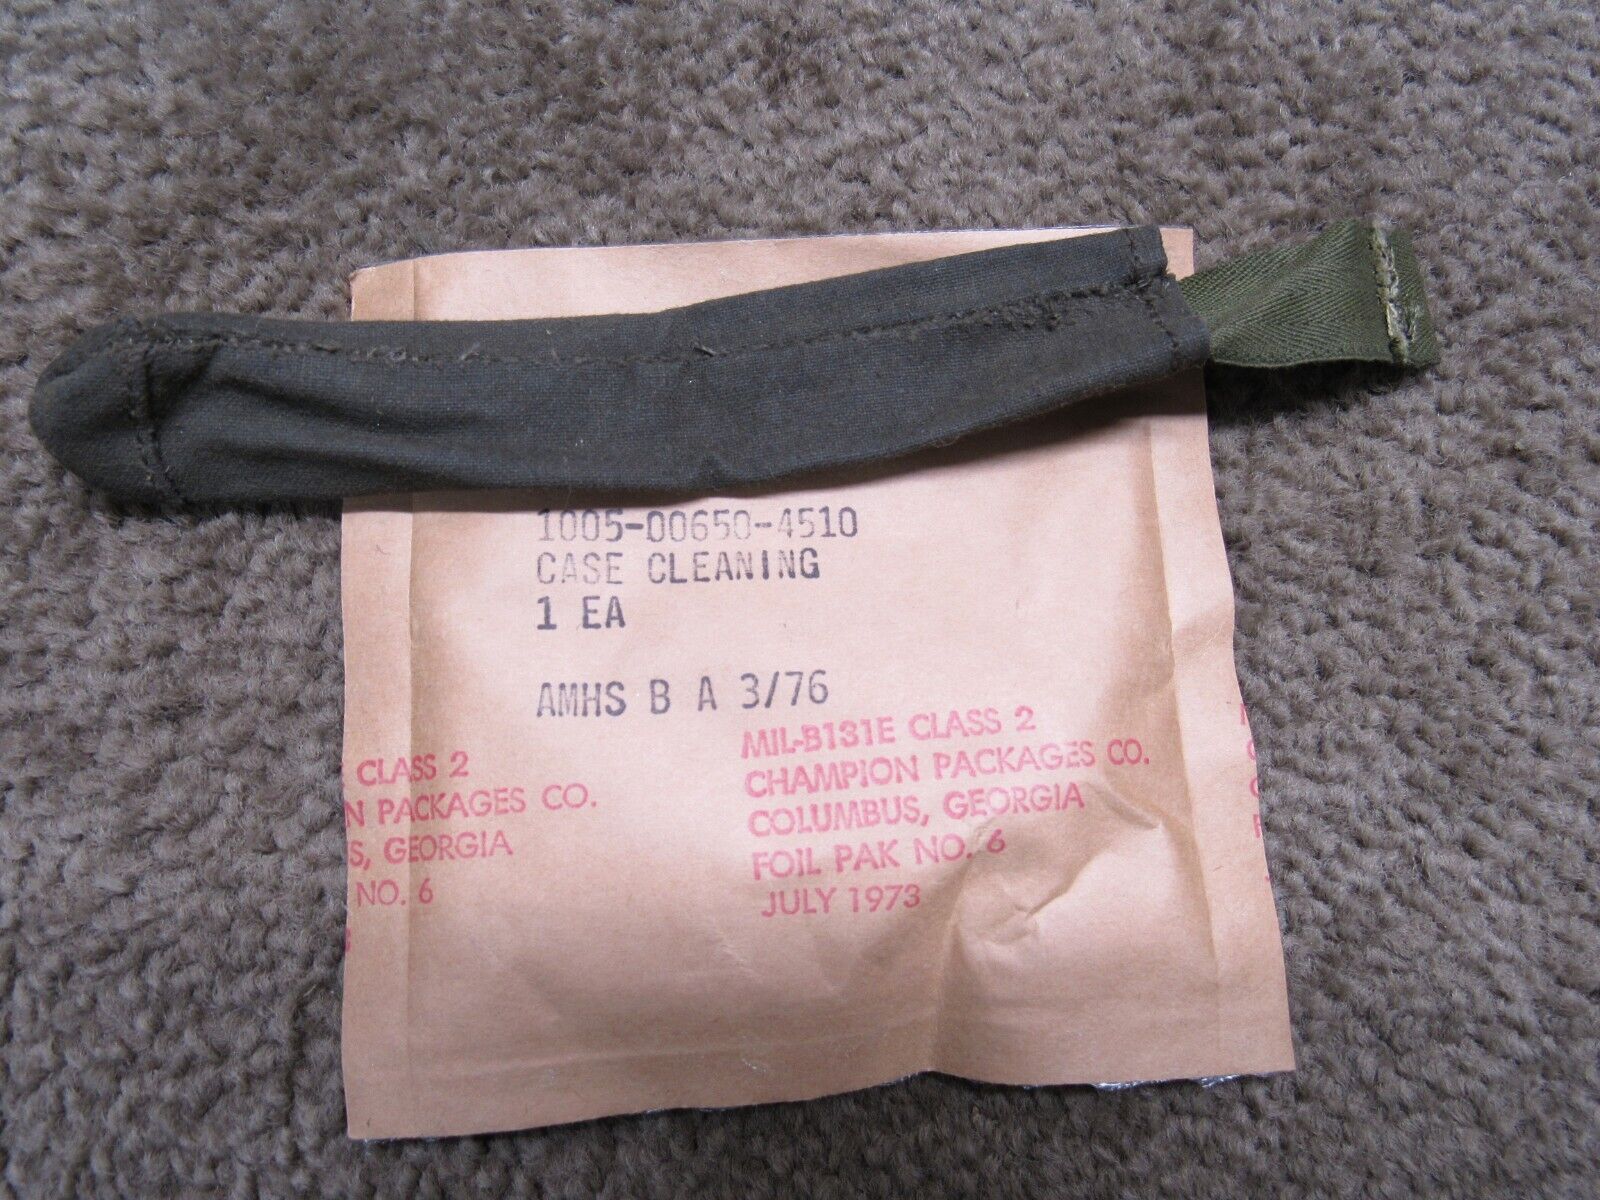 Vietnam Era Butt Stock Cleaning Kit Rod Section Pouch 7.62mm & M1 Garand 30 CAL